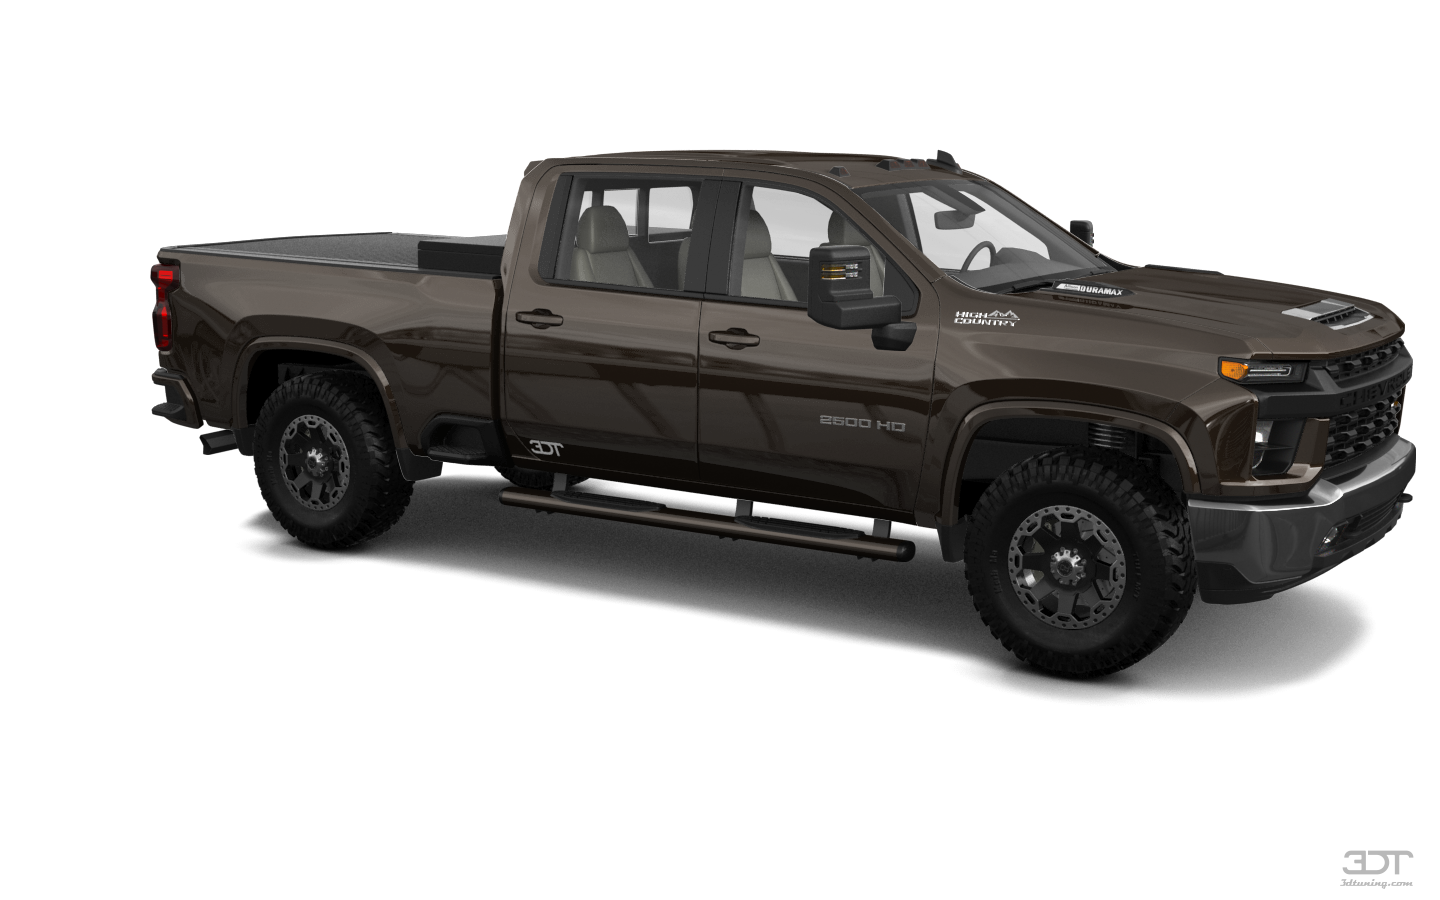 Chevrolet Silverado 2500 HD 4 Door pickup truck 2020